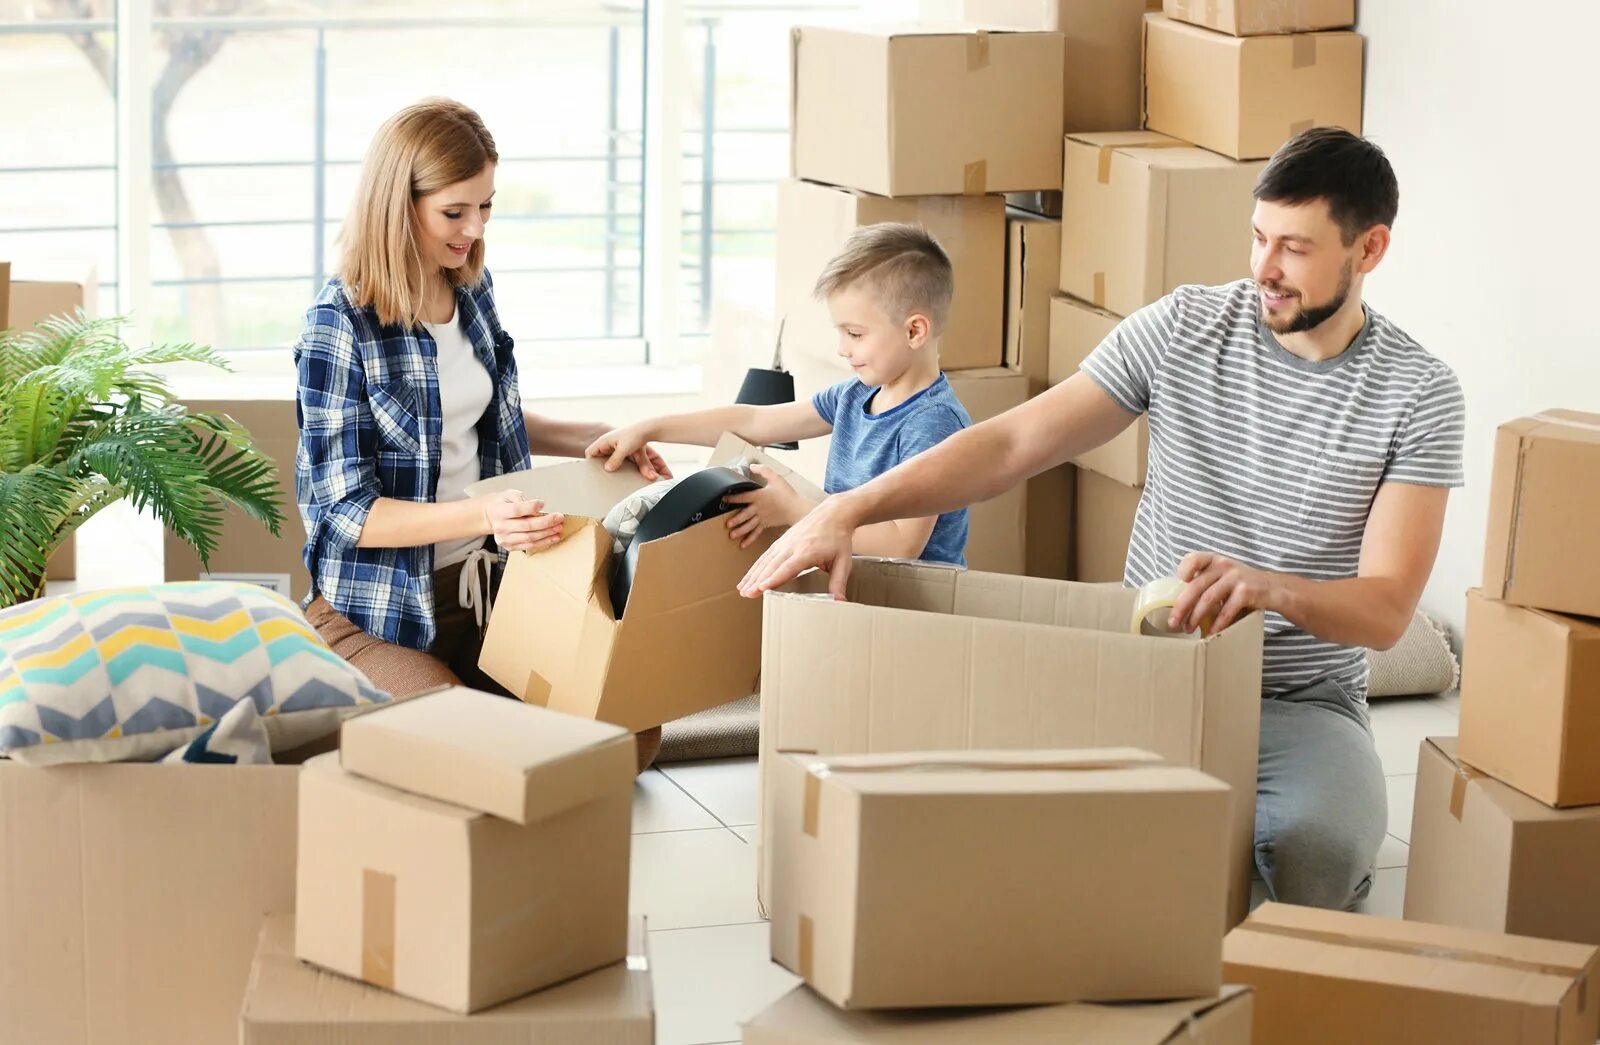 Переезжаем что ответить. Переезд. Семья в квартире с коробками. Переезжают в квартиру. Коробки с вещами.